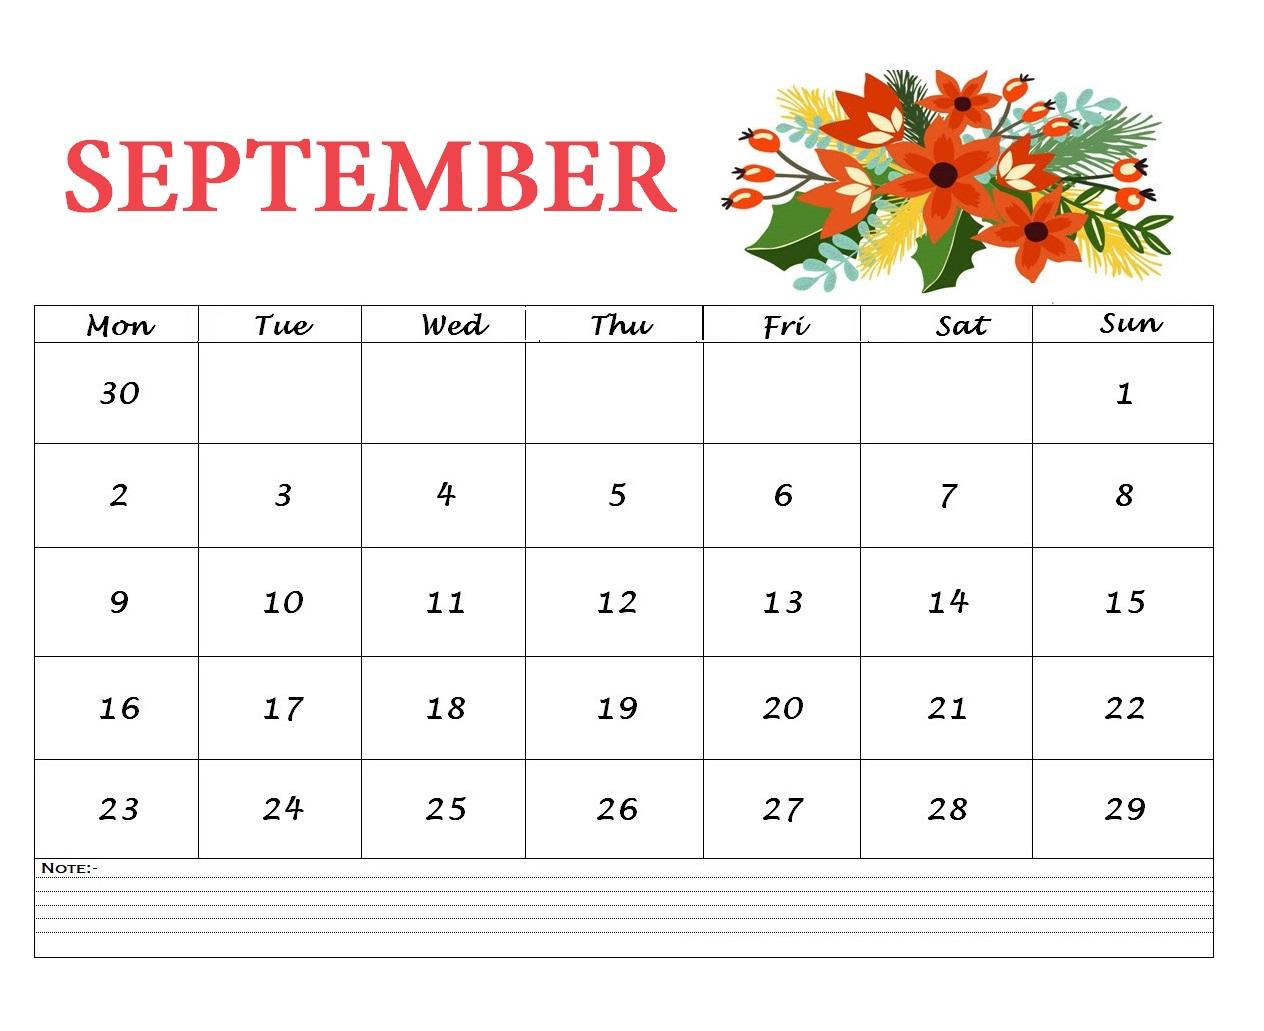 Floral September 2019 Wall Calendar